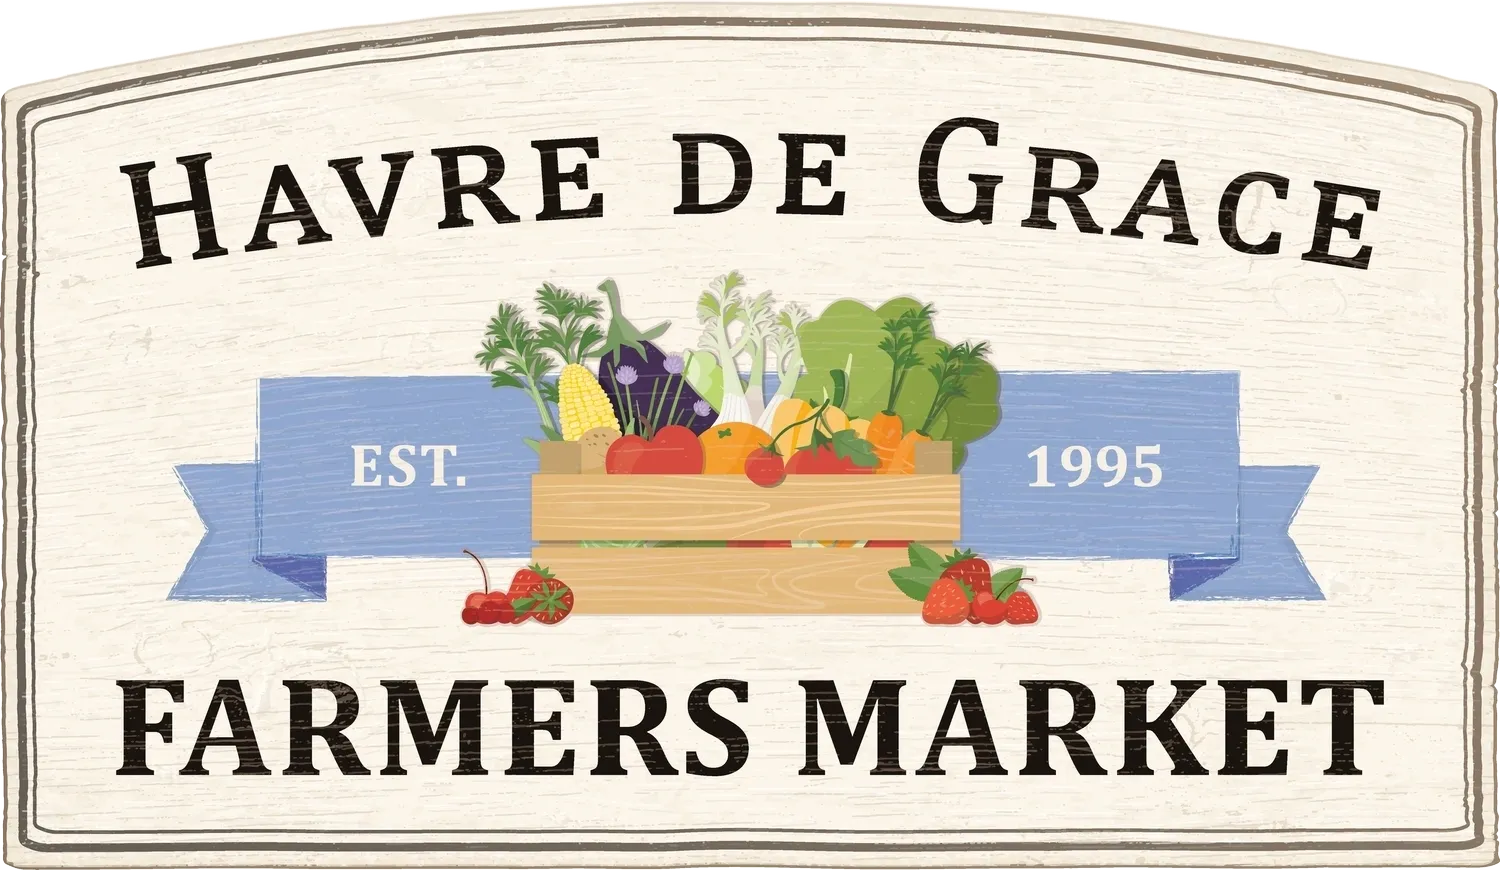 Havre de grace farmers market sign.